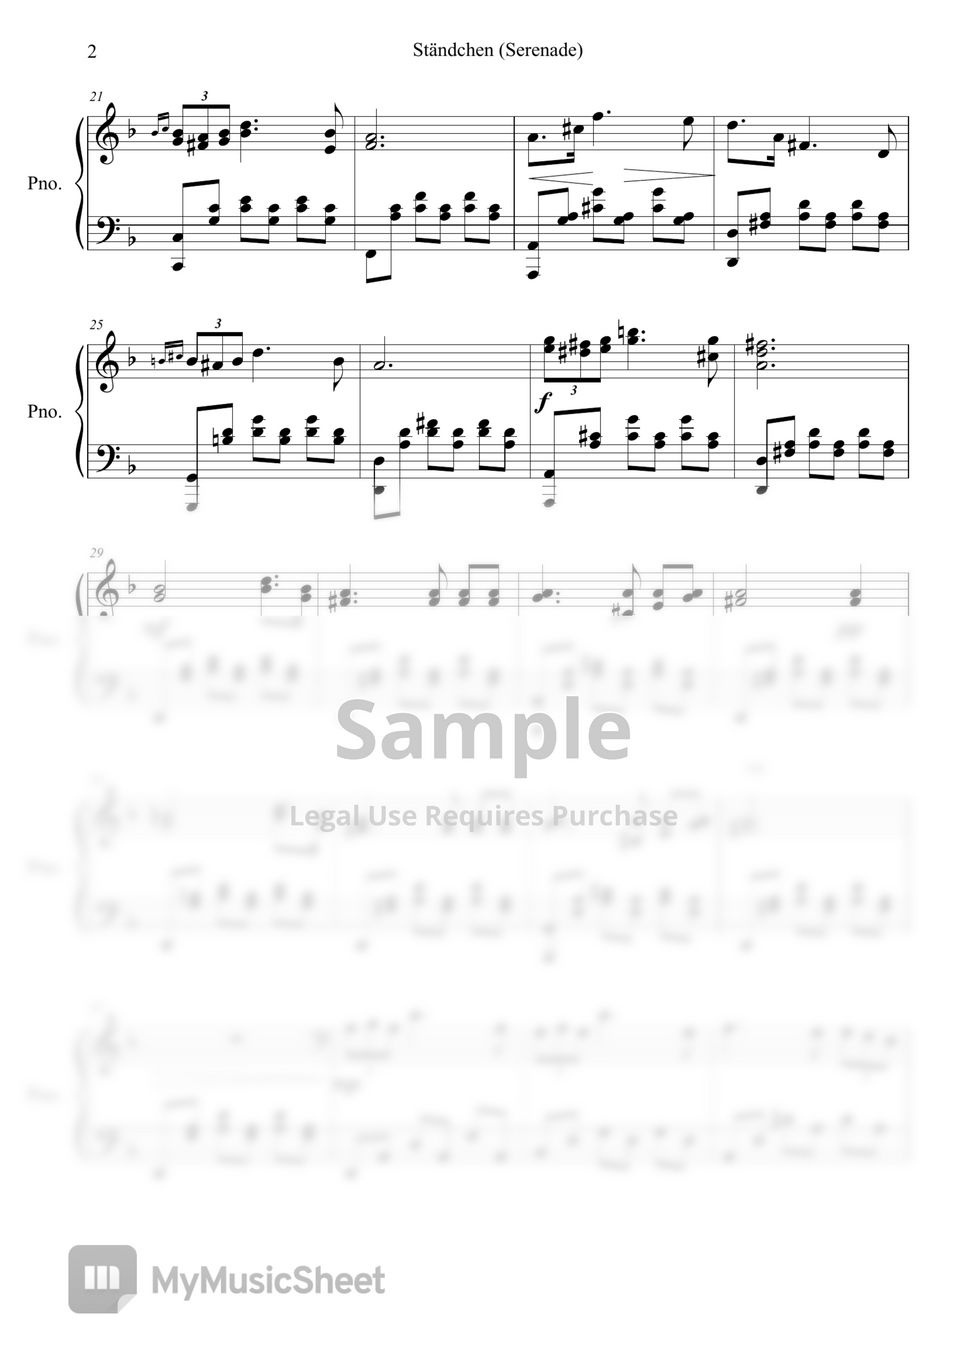 F. Schubert - Serenade - Ständchen (Swan song D957) - Franz Schubert by Trinthepianist